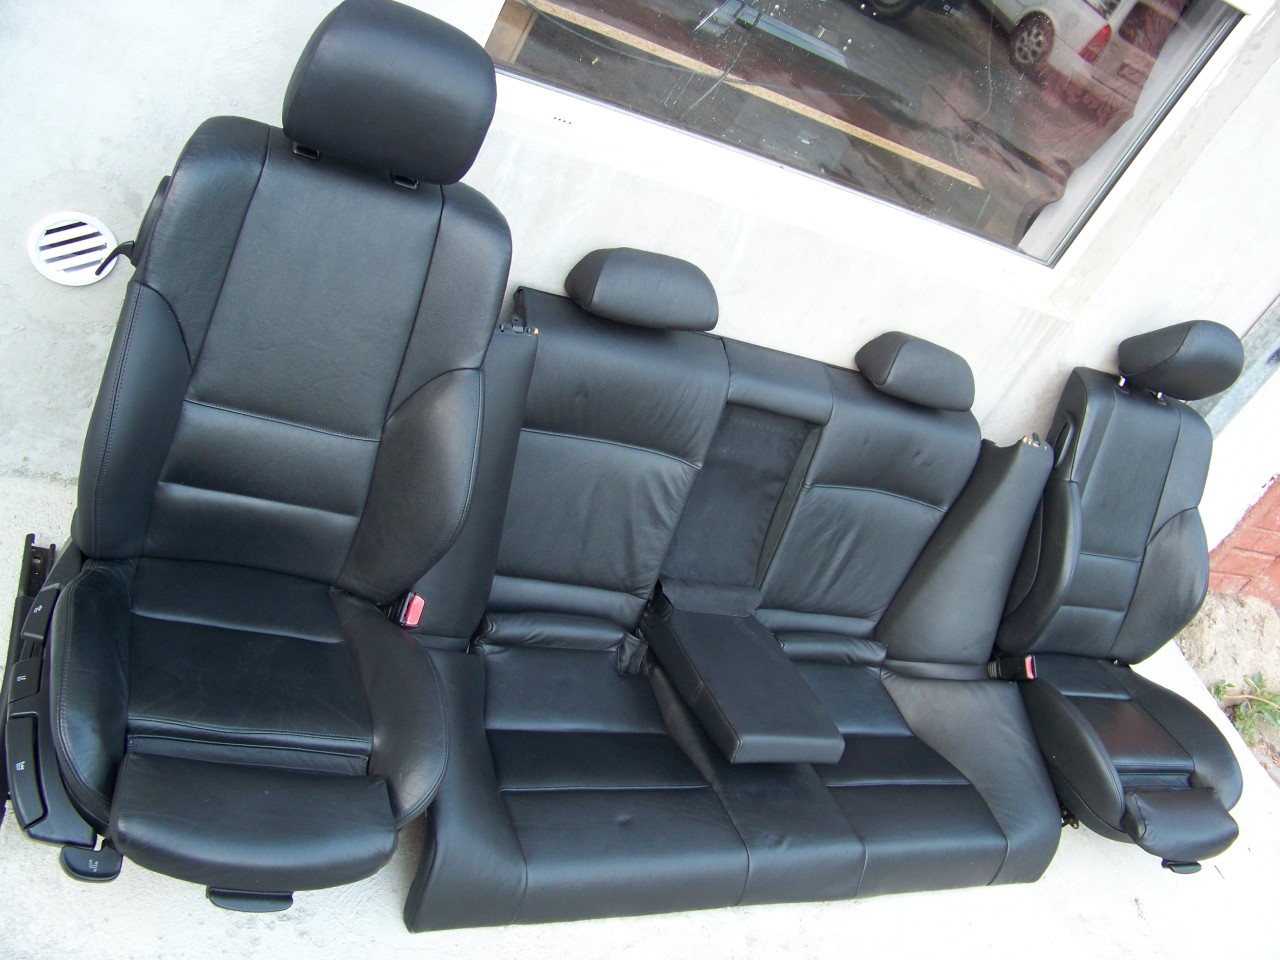 Interior scaune si banchete piele ///M3 recaro sport bmw e46 ci coupe  #29820020